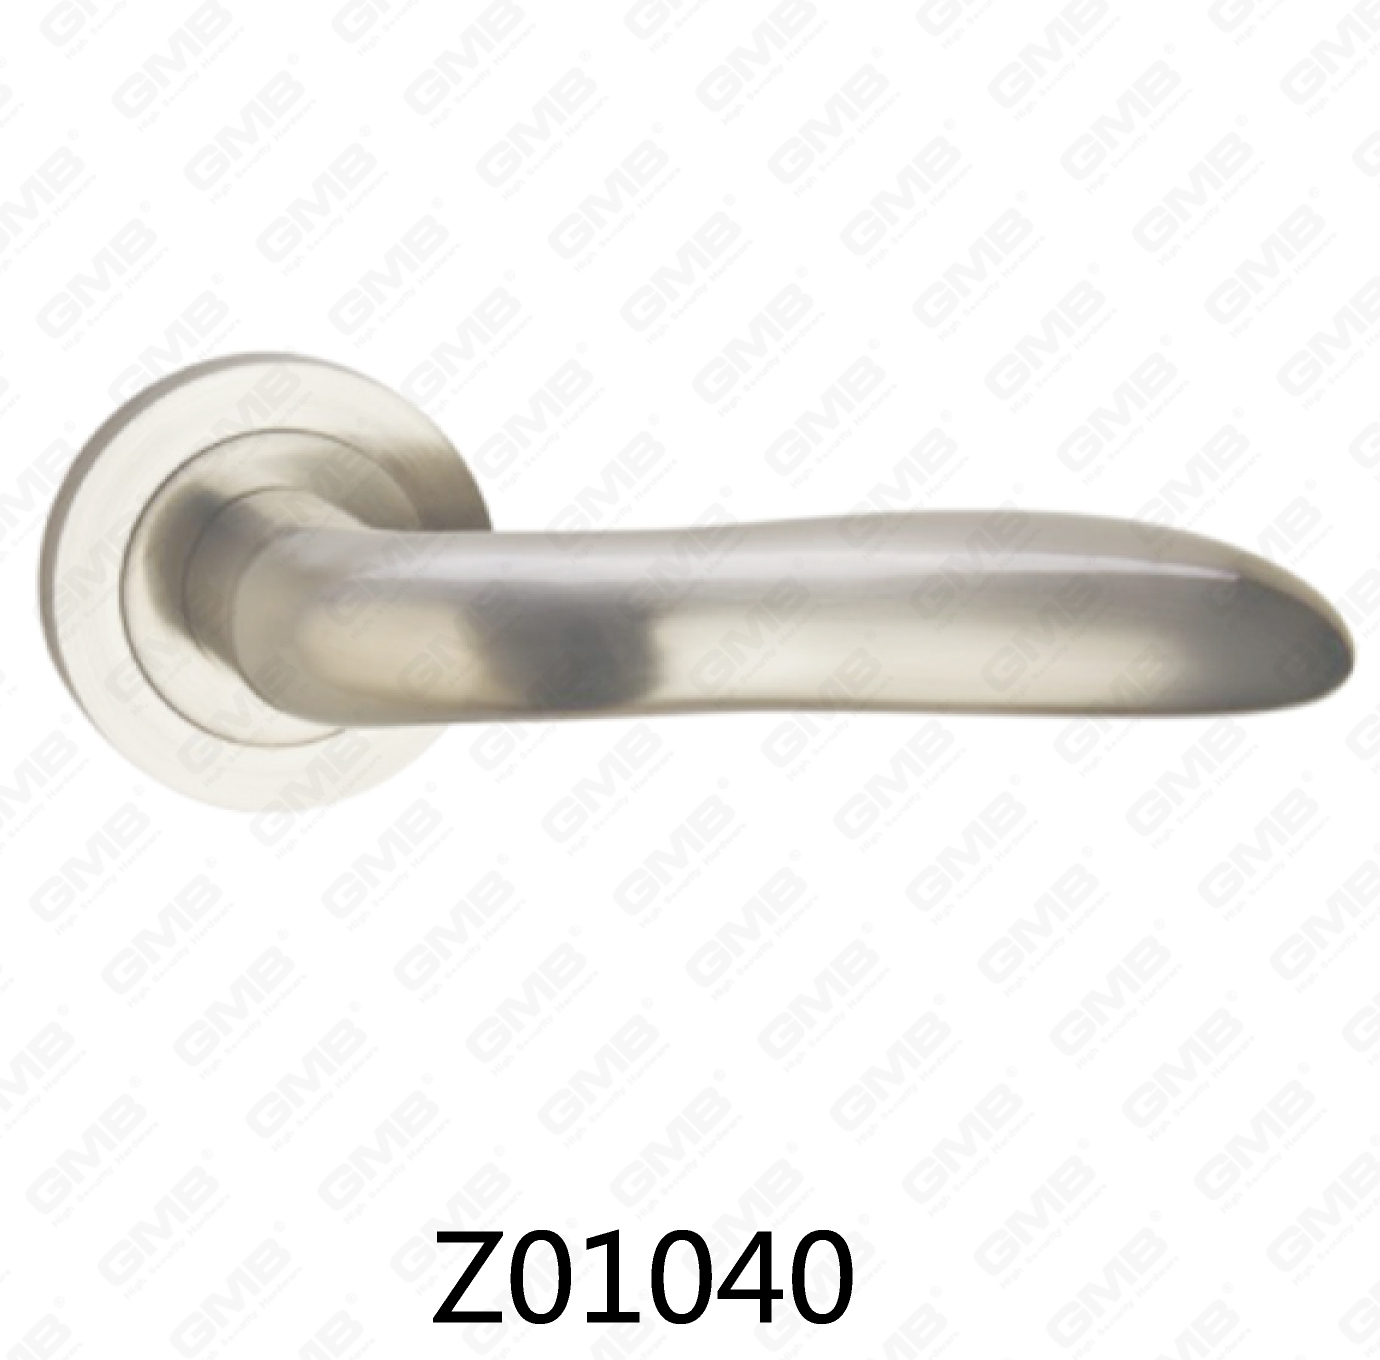 Asa de puerta de roseta de aluminio de aleación de zinc Zamak con roseta redonda (Z01040)